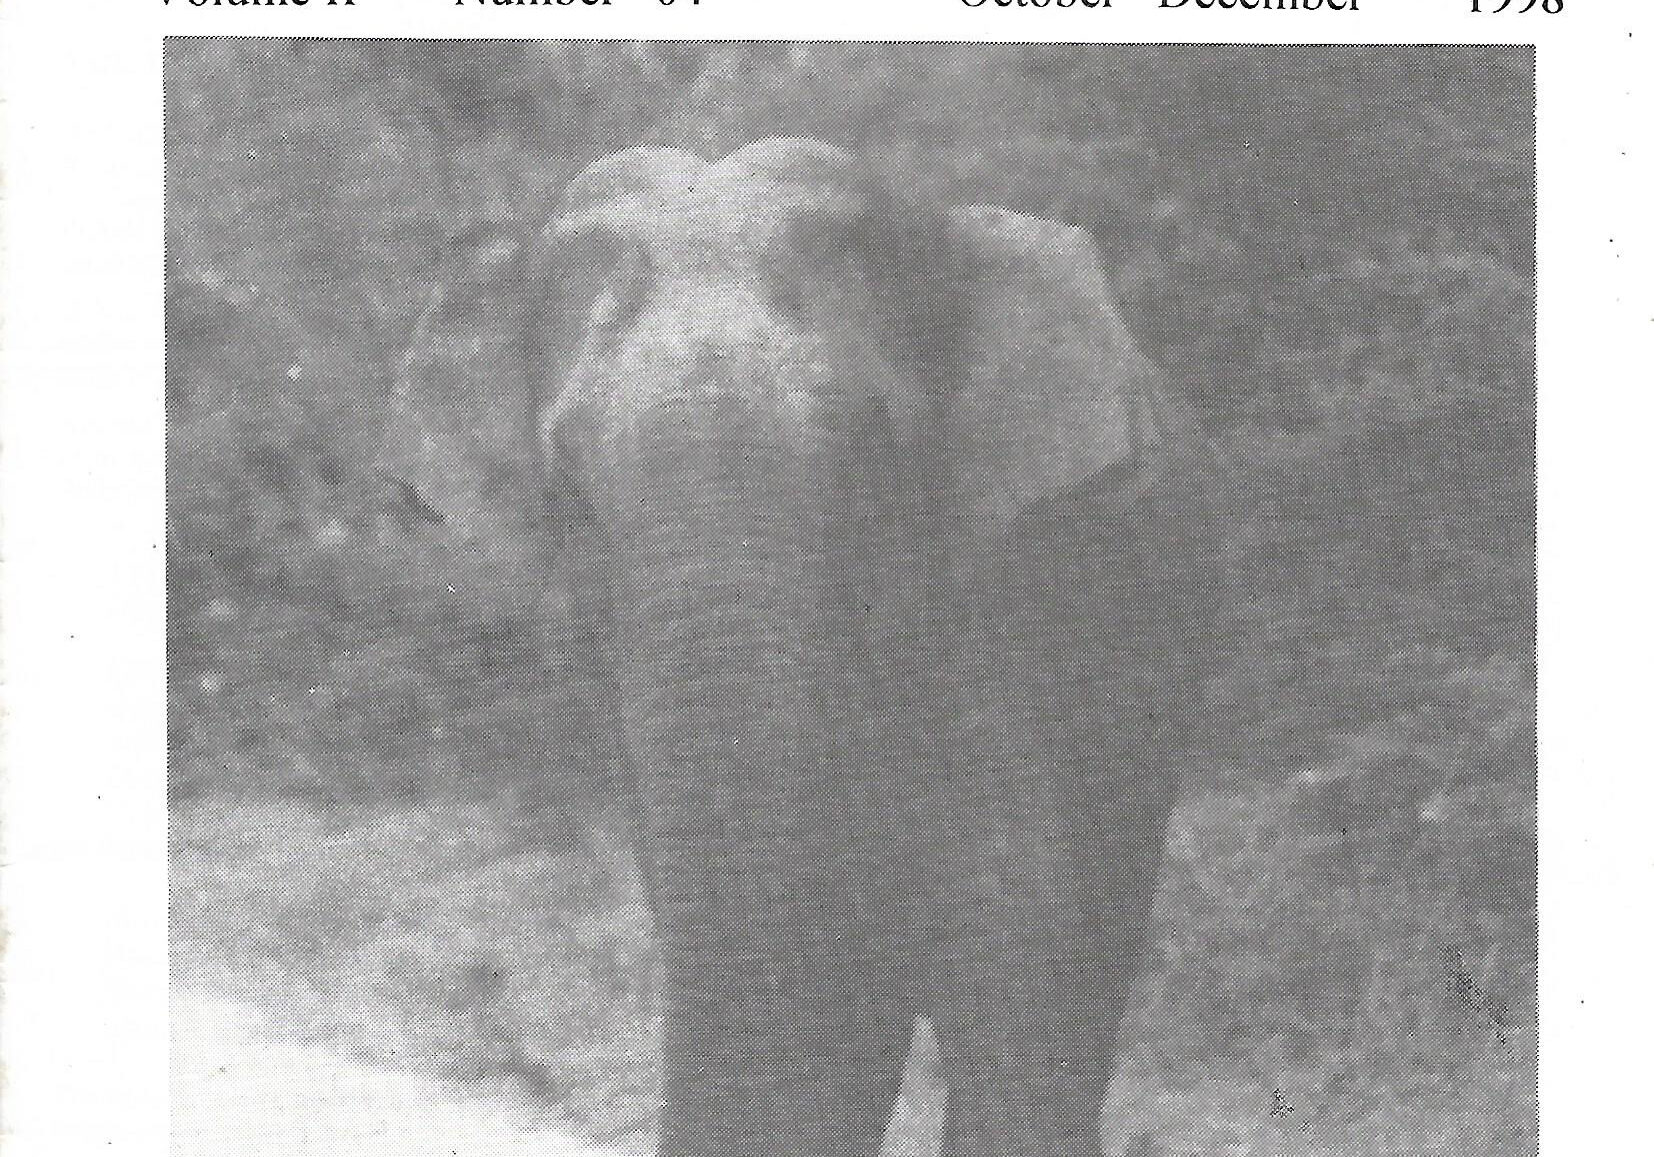 naturalist 1998 vol 2 no 4 p1